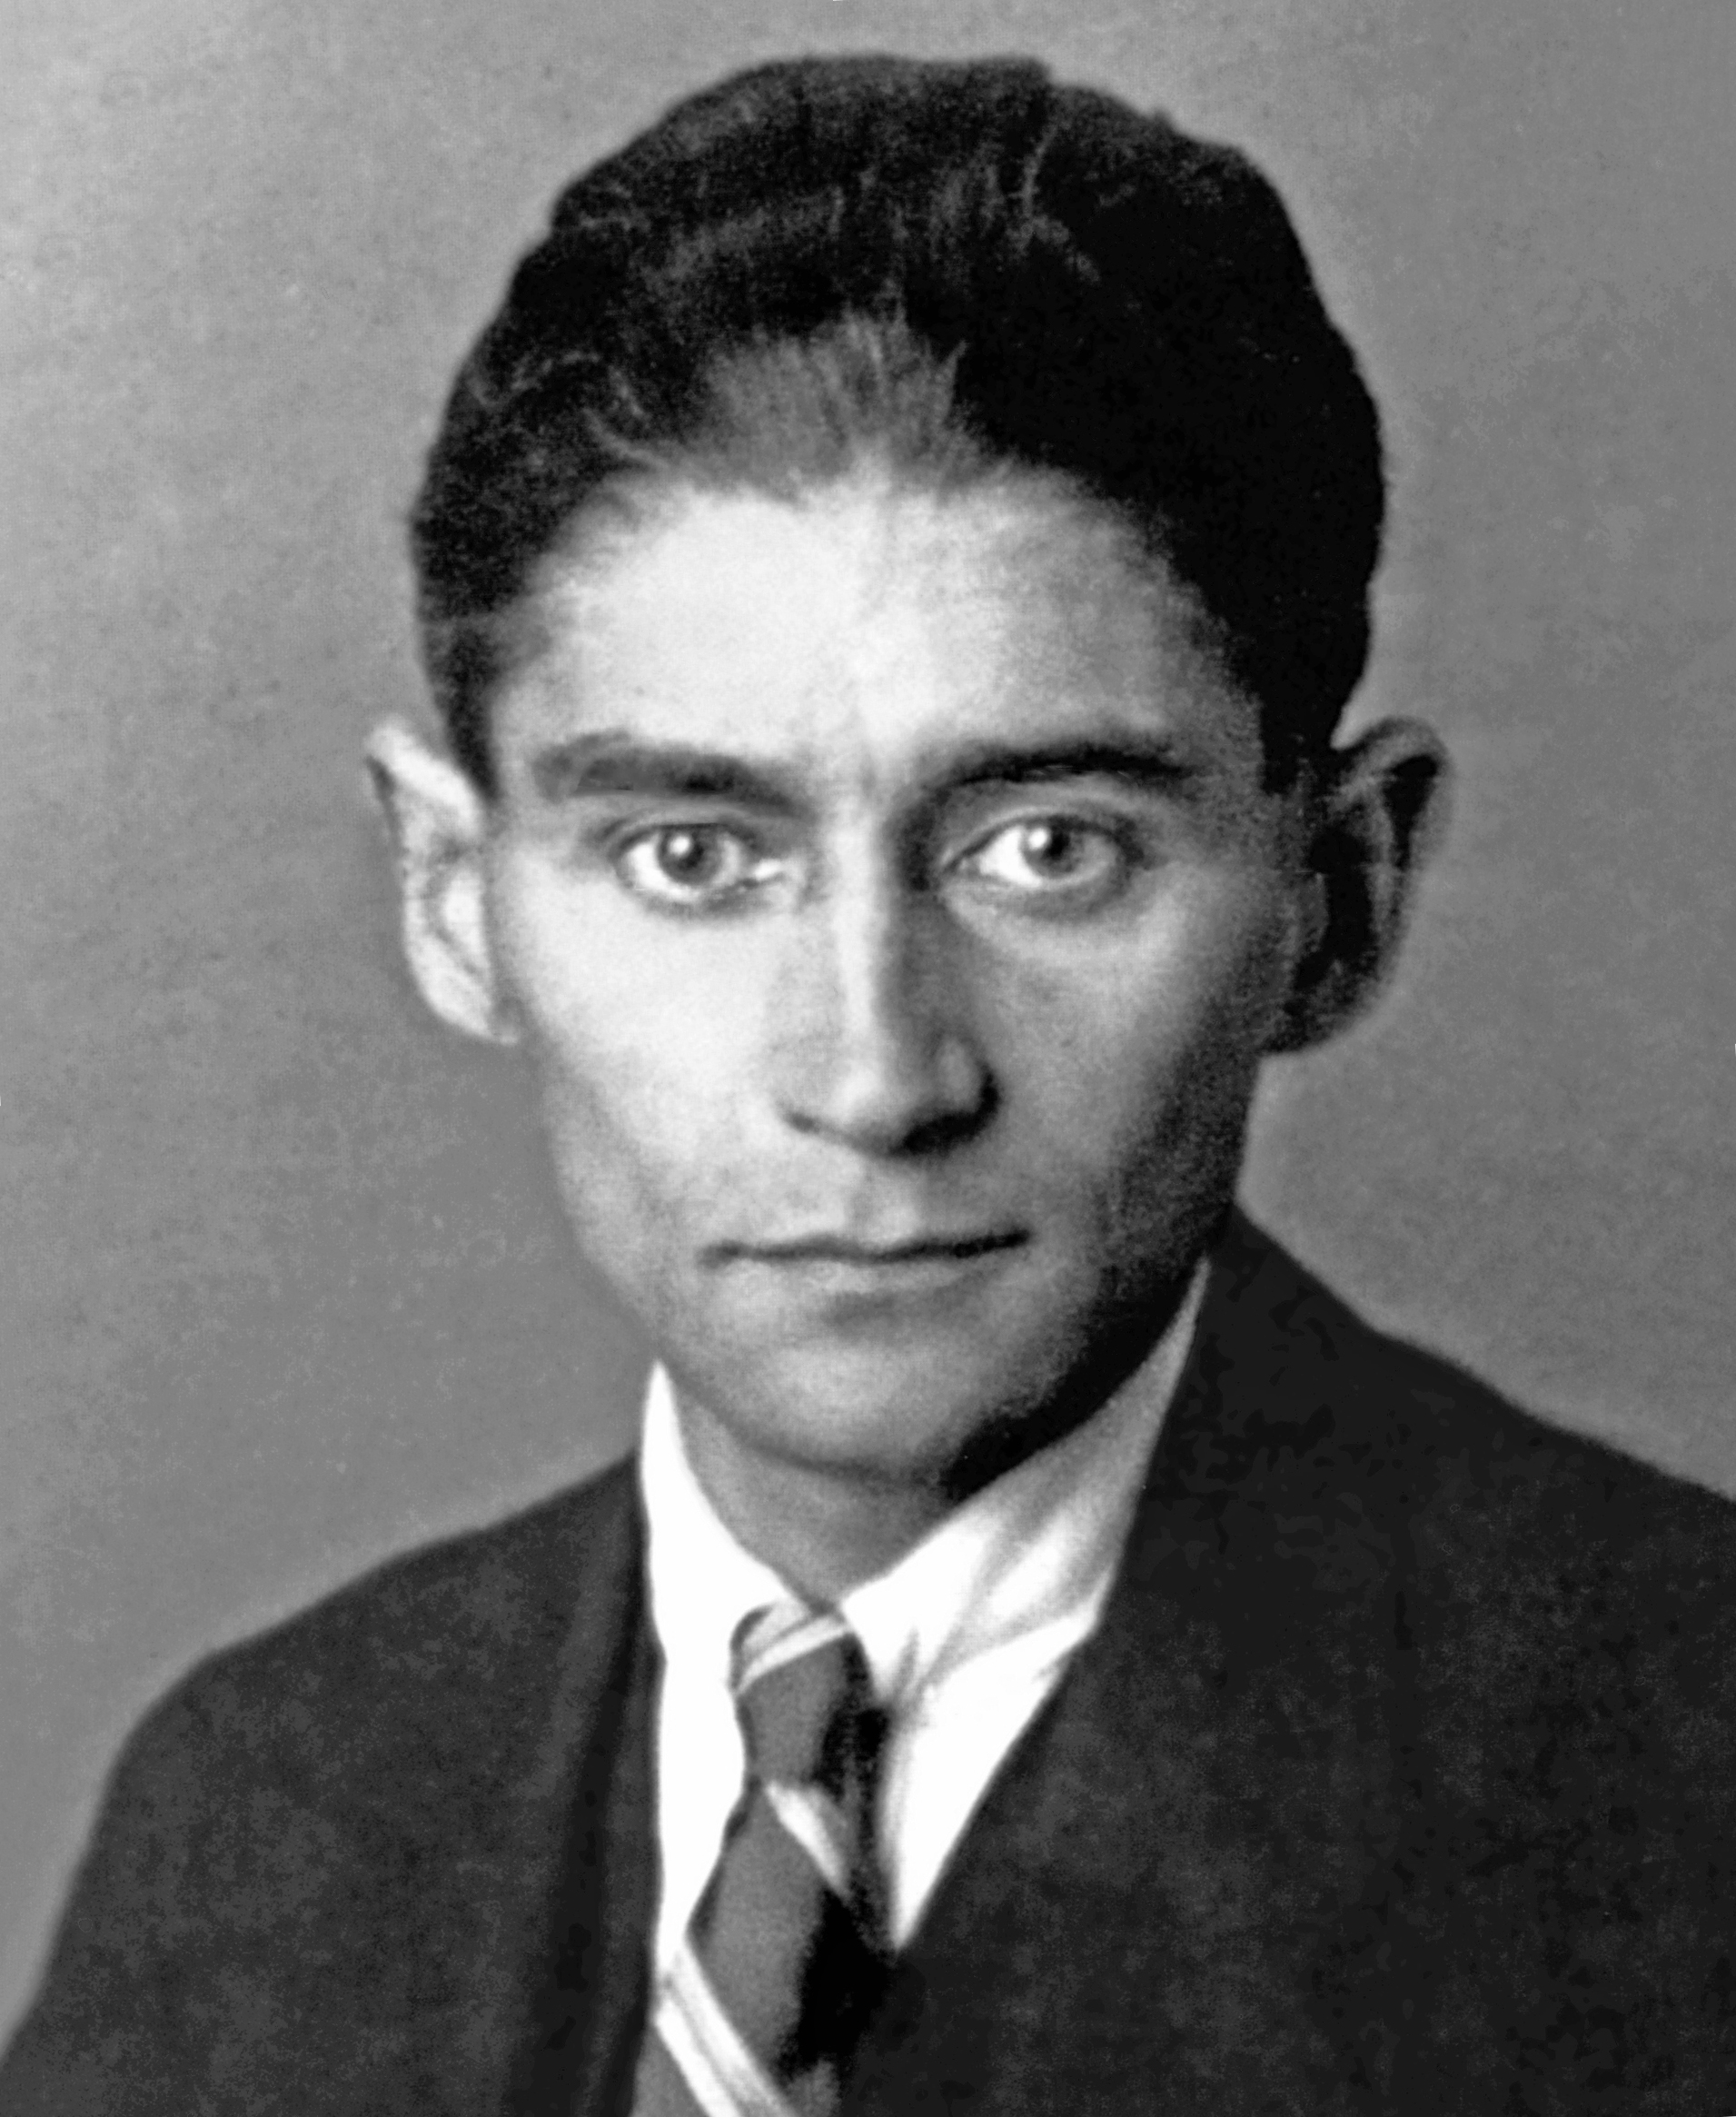 http://upload.wikimedia.org/wikipedia/commons/b/b4/Kafka.jpg